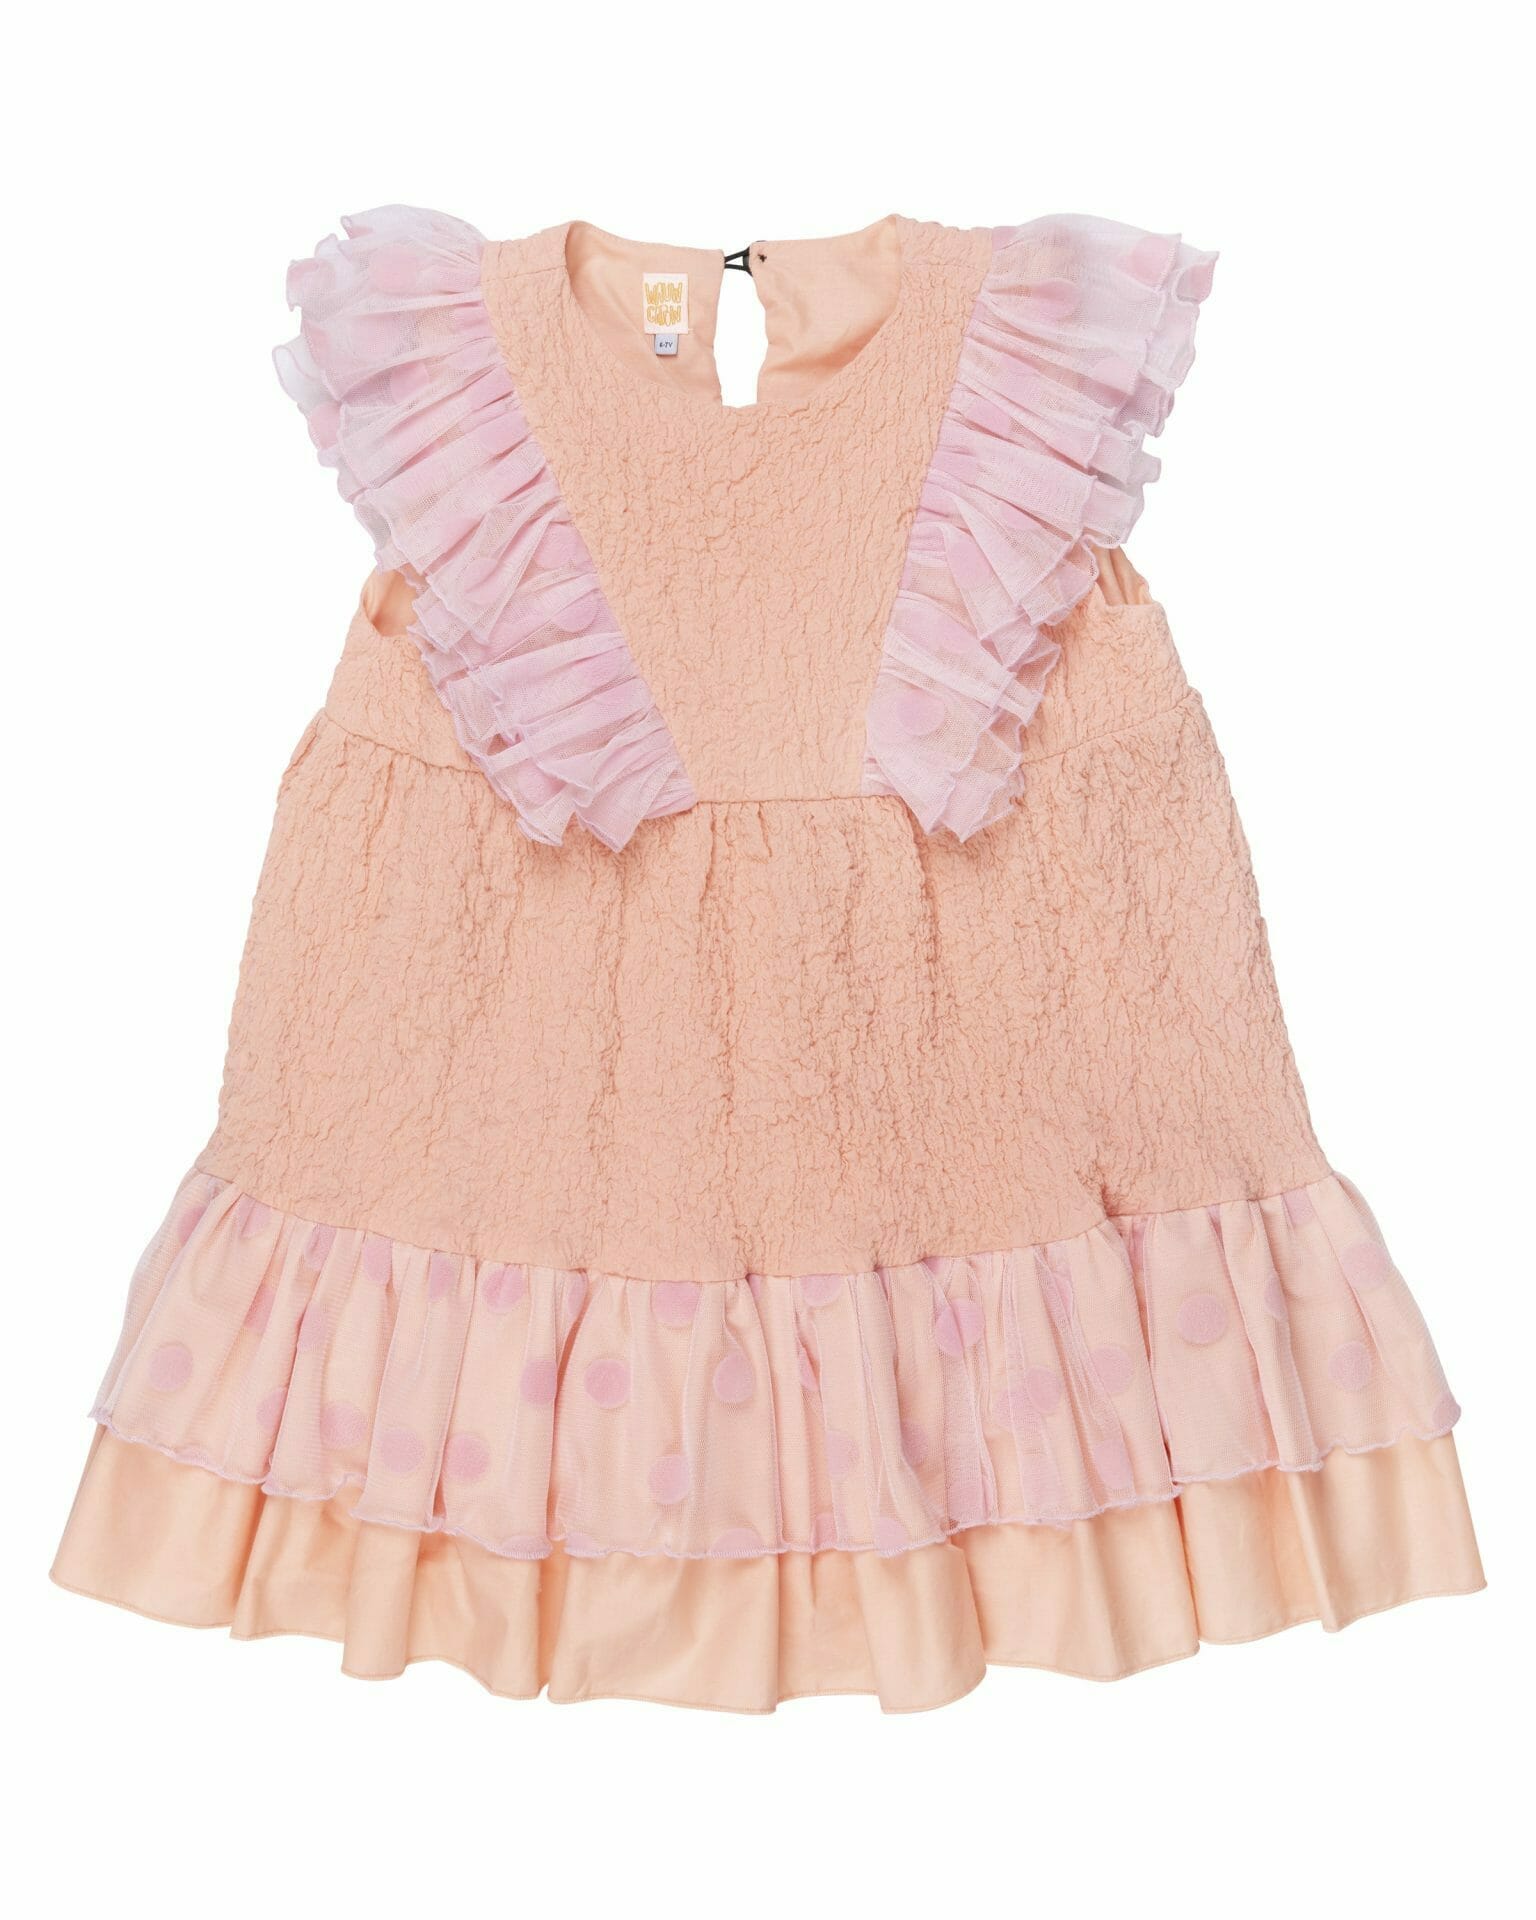 Girls pink ruffle dress • Petite Kingdom